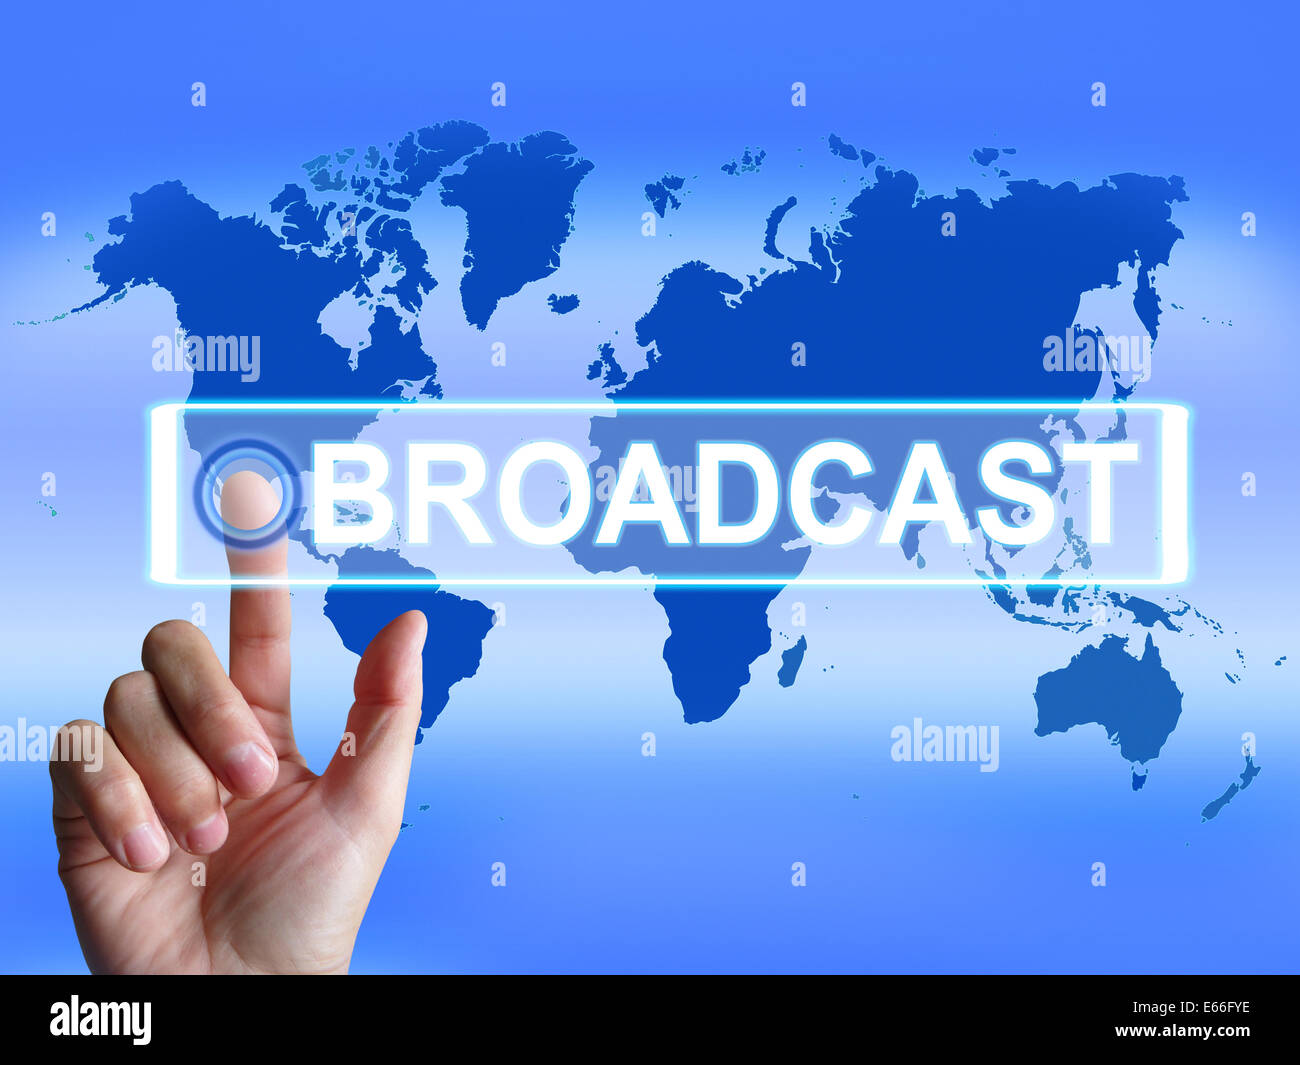 Übertragen Sie Karte mit internationaler Ausstrahlung und Übertragung von Nachrichten Stockfoto